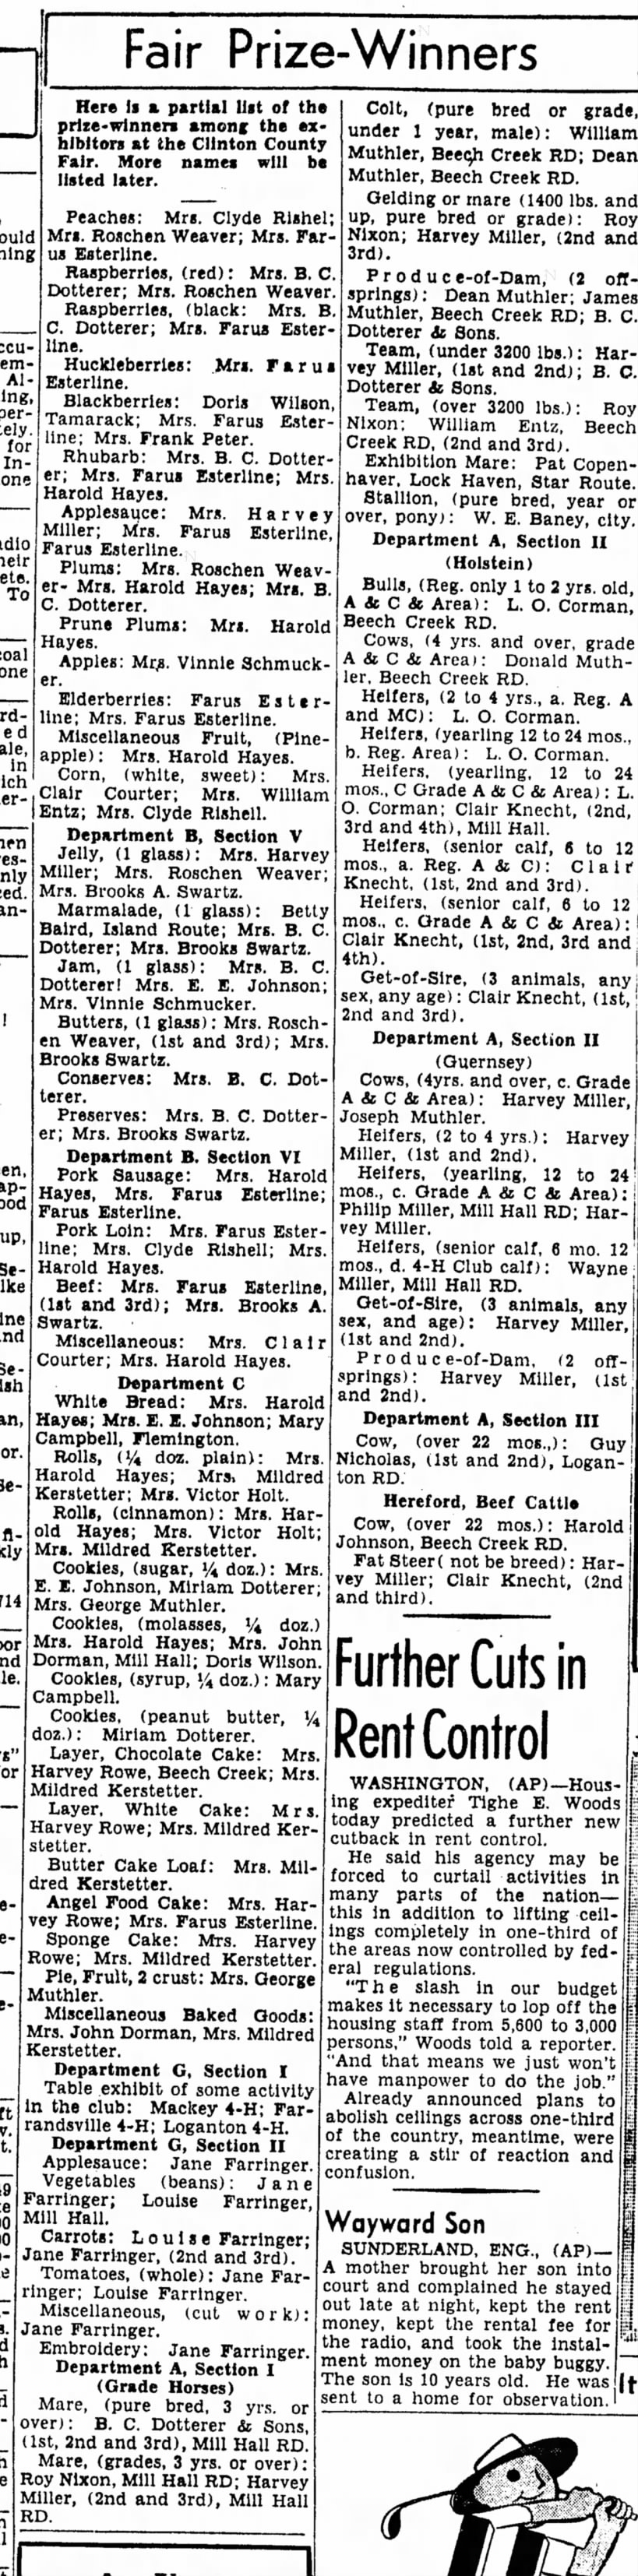 1949 fair winners 19 Aug 1949 LHEx